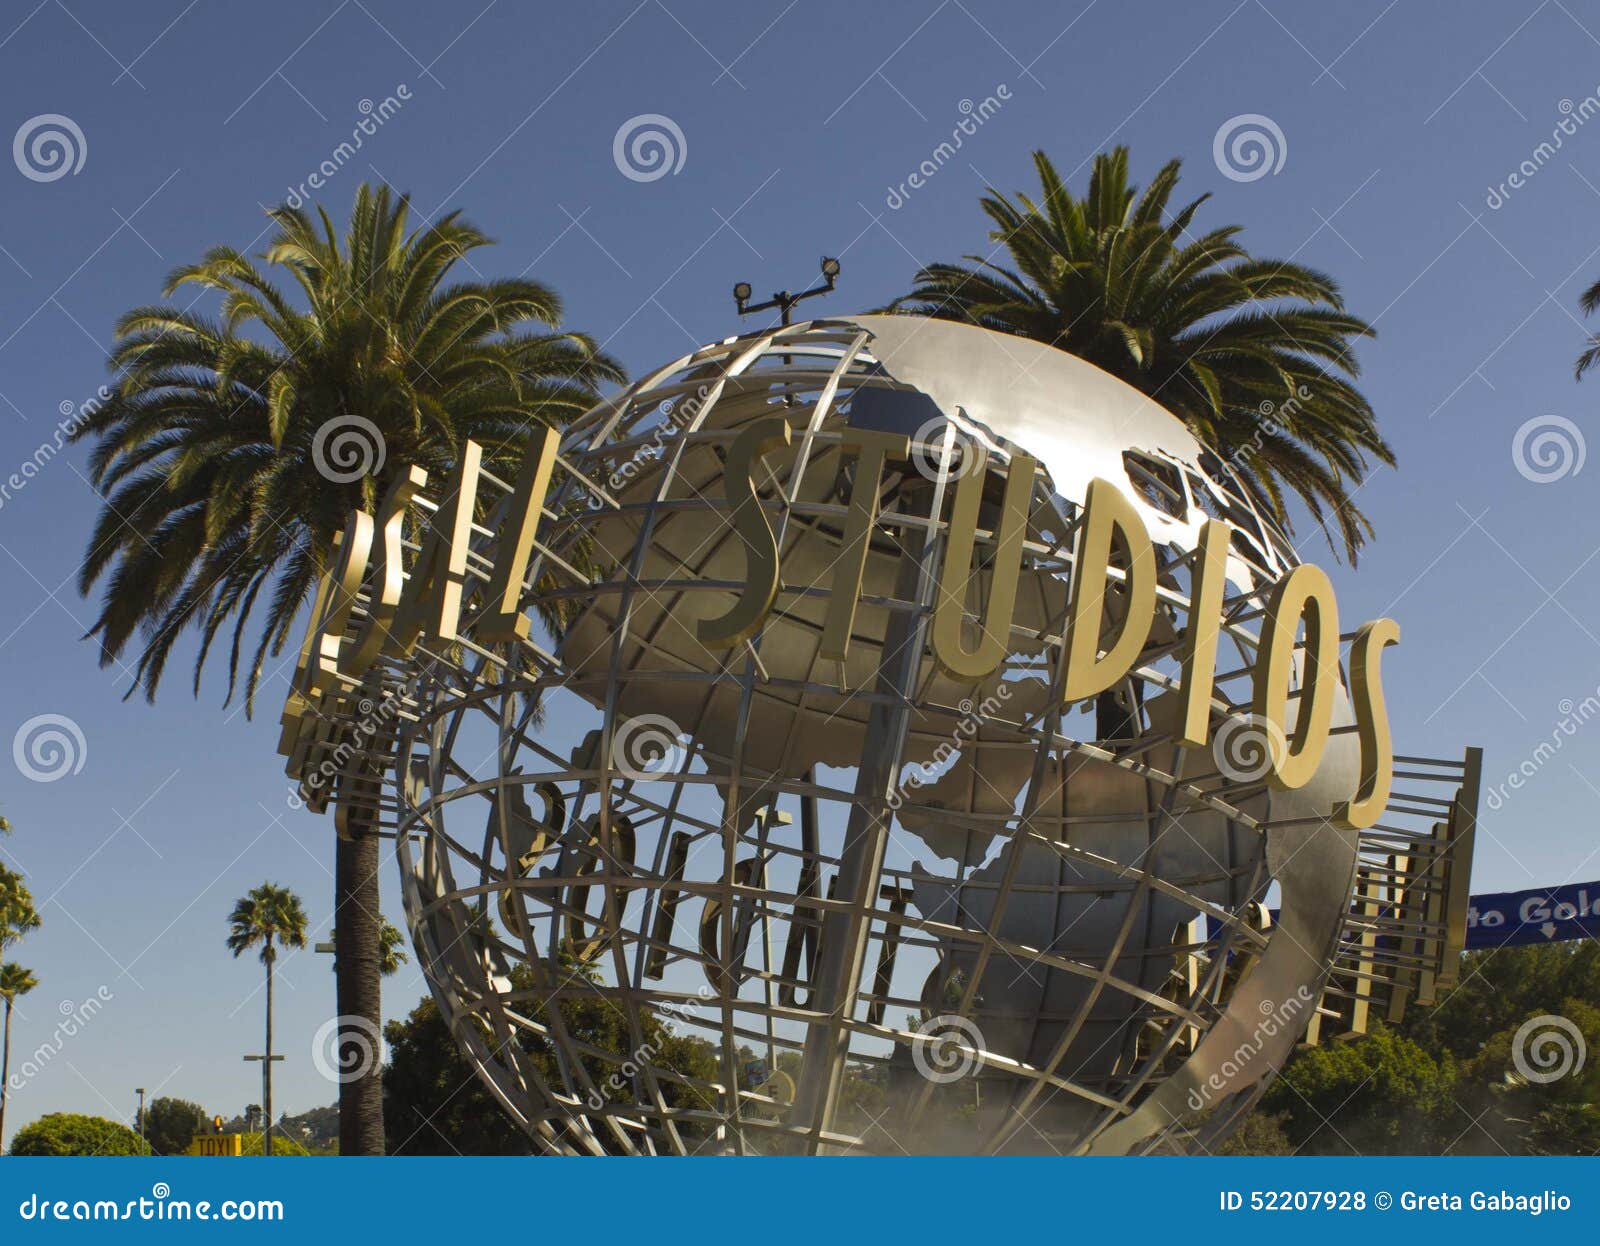 LOS ANGELES, CALIFORNIA - 17 AGOSTO 2013: Segno di Hollywood degli studi universali all'entrata del parco di divertimenti, suroounded dalle palme